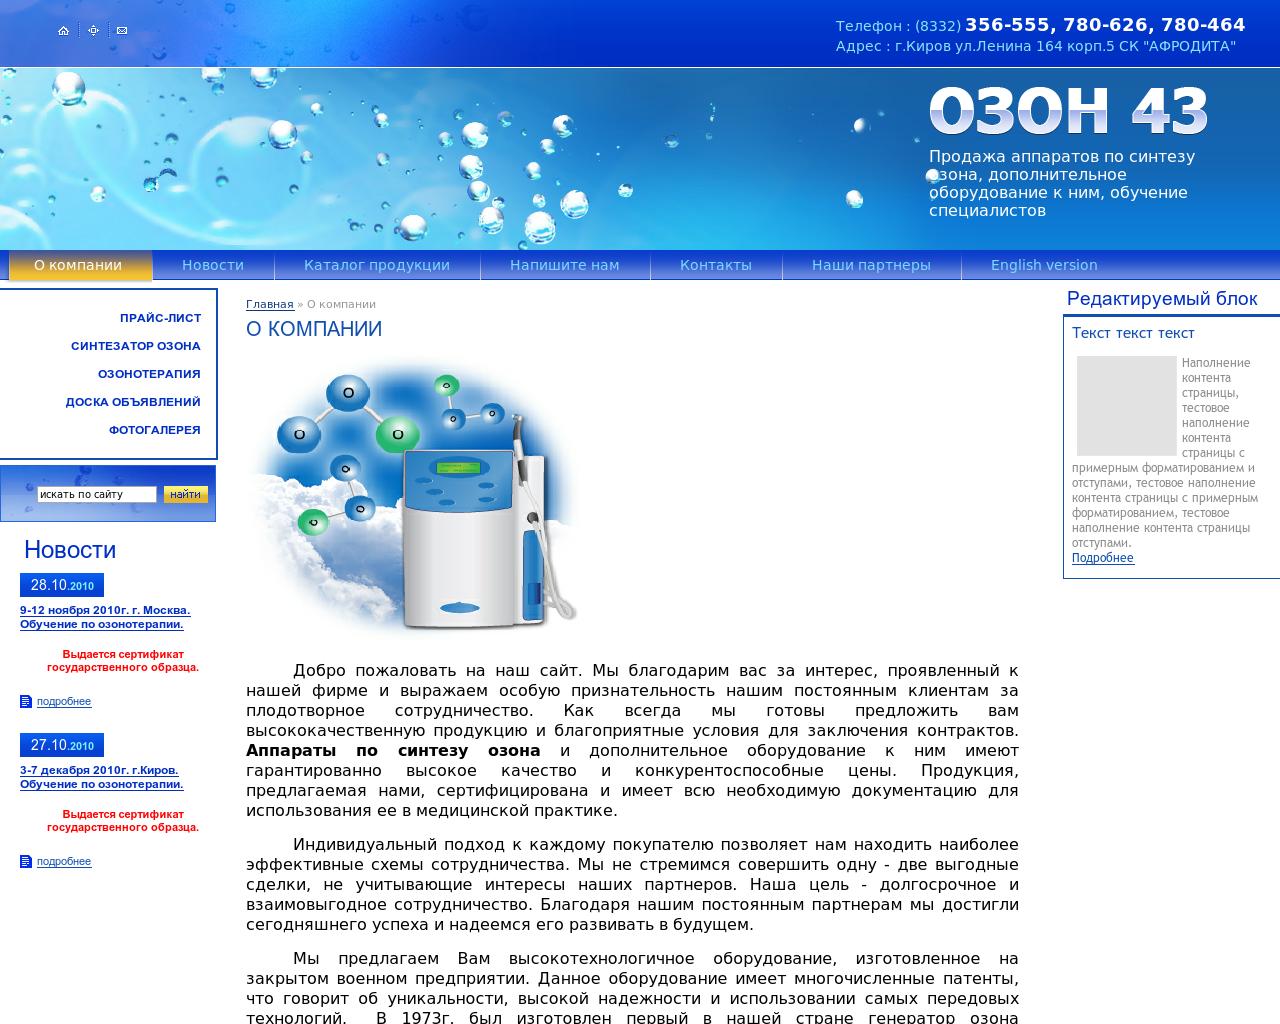 Изображение сайта ozon43.ru в разрешении 1280x1024